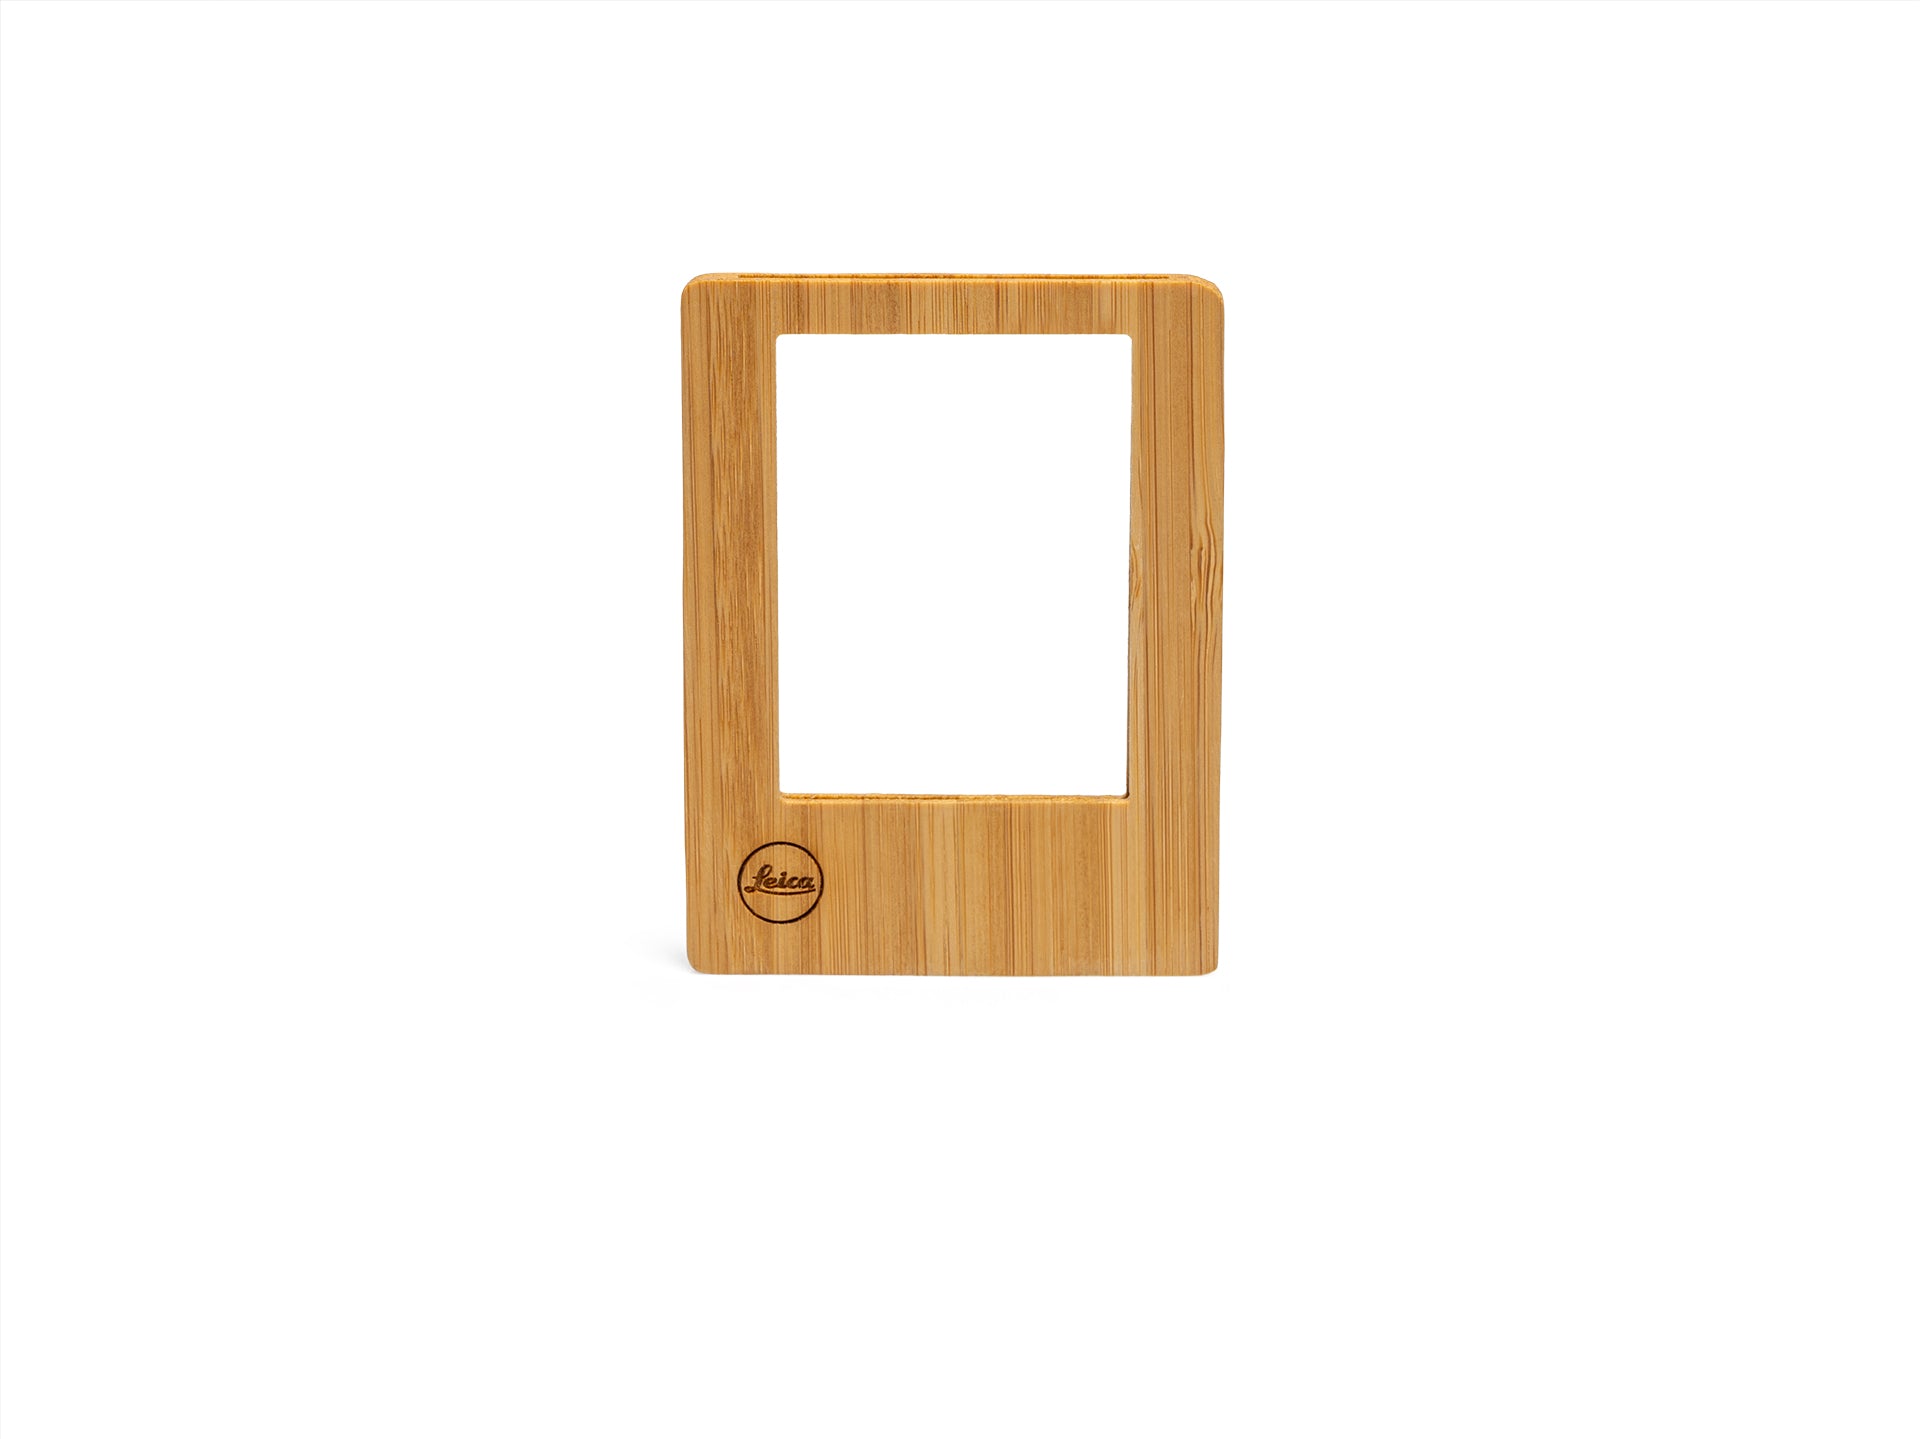 SOFORT Magnet Frame-Set in Natural Wood